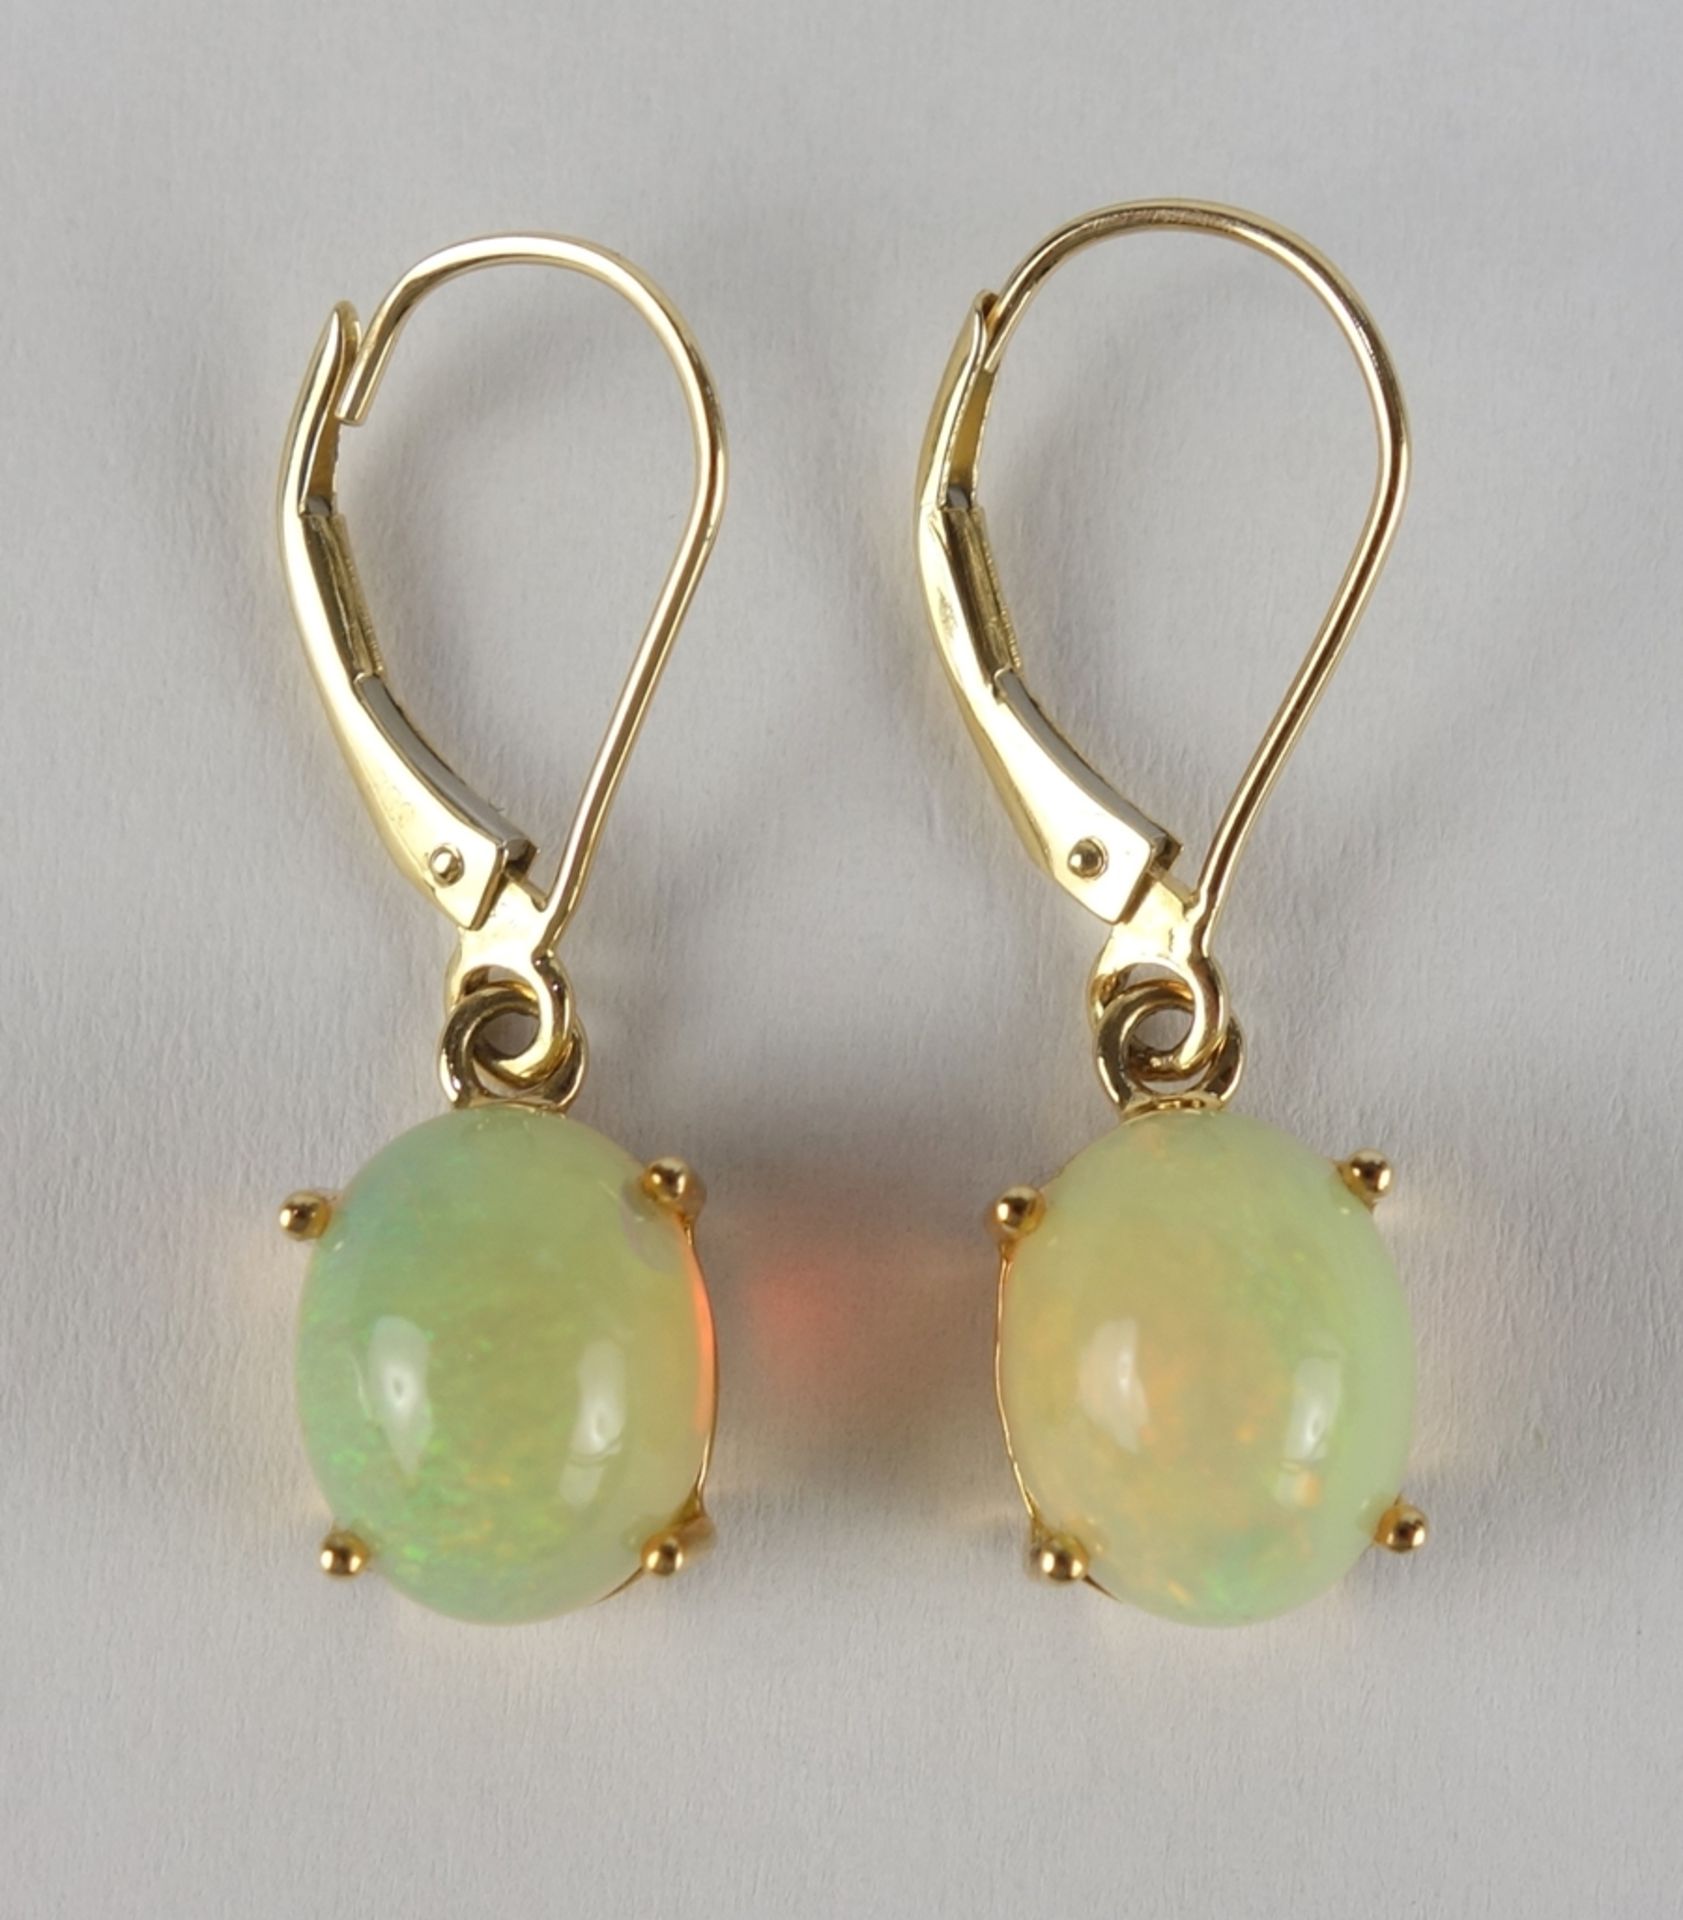 Opal-Anhänger an Kette und Paar Opal-Ohrringe, 585er Gold, Gew.7,01g - Bild 4 aus 5